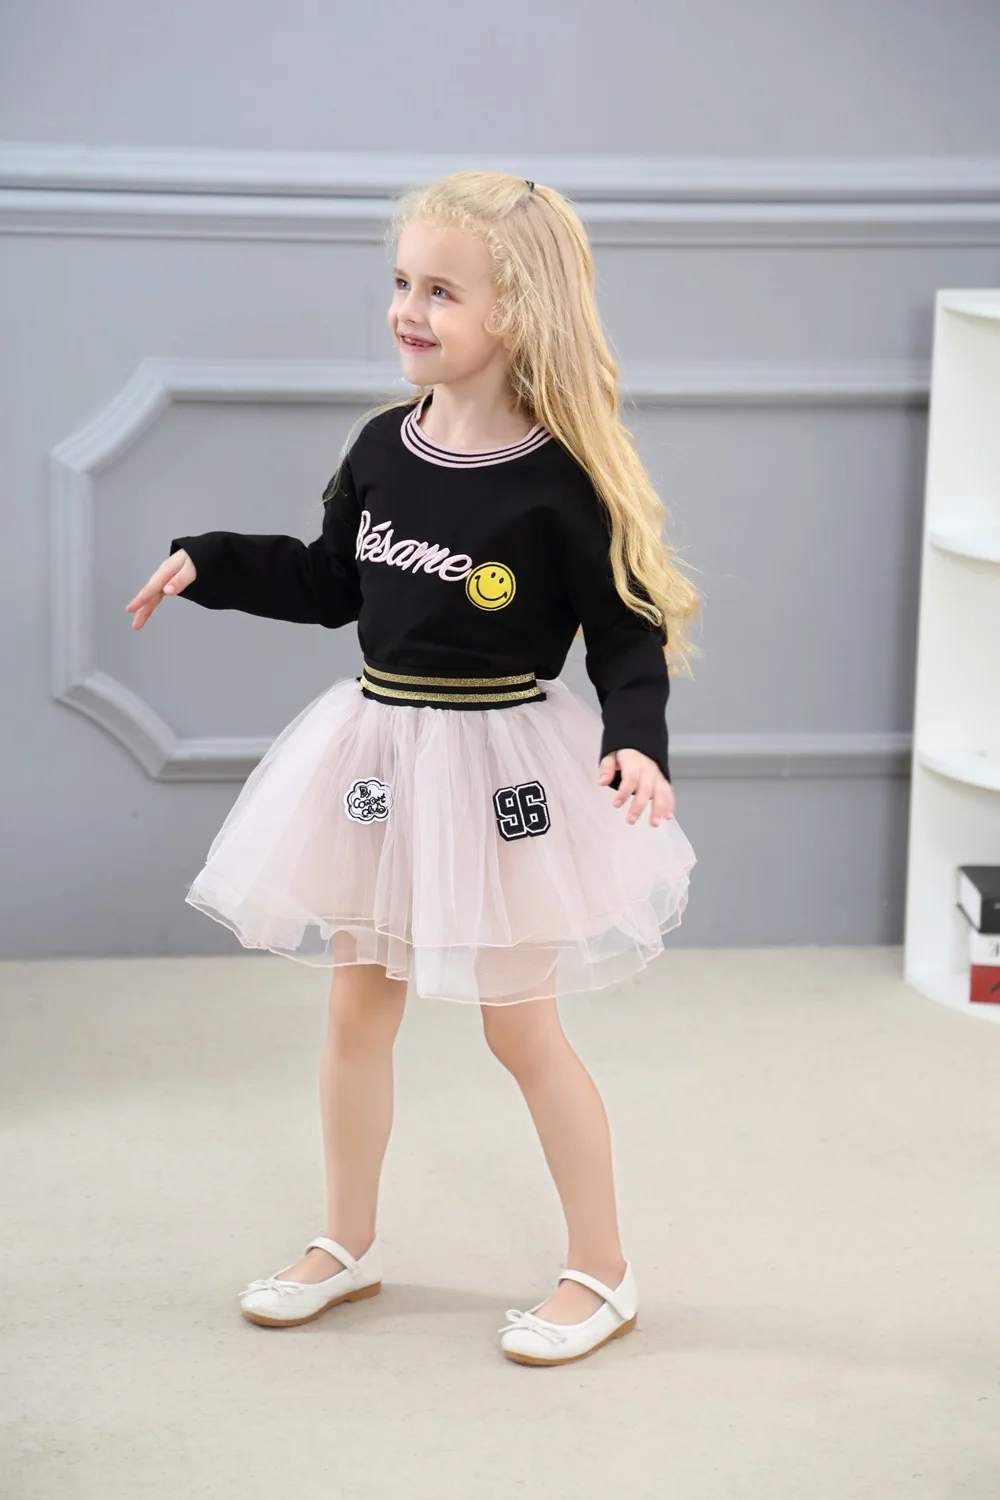 Alice/детская одежда коллекция года, новая осенняя флисовая одежда с надписью и улыбающимся лицом для девочек+ этикетка пряжа юбки Комплекты из 2 предметов